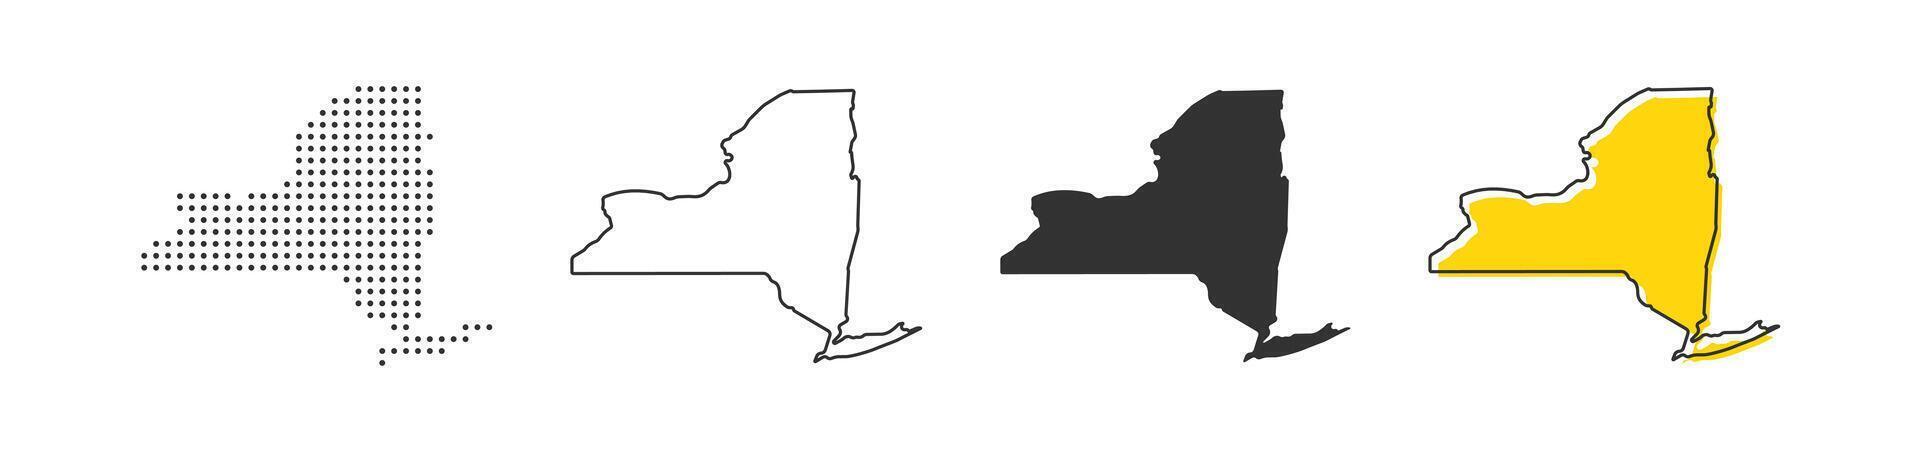 nuevo York estado mapa de Estados Unidos país. geografía frontera de americano ciudad. vector ilustración.